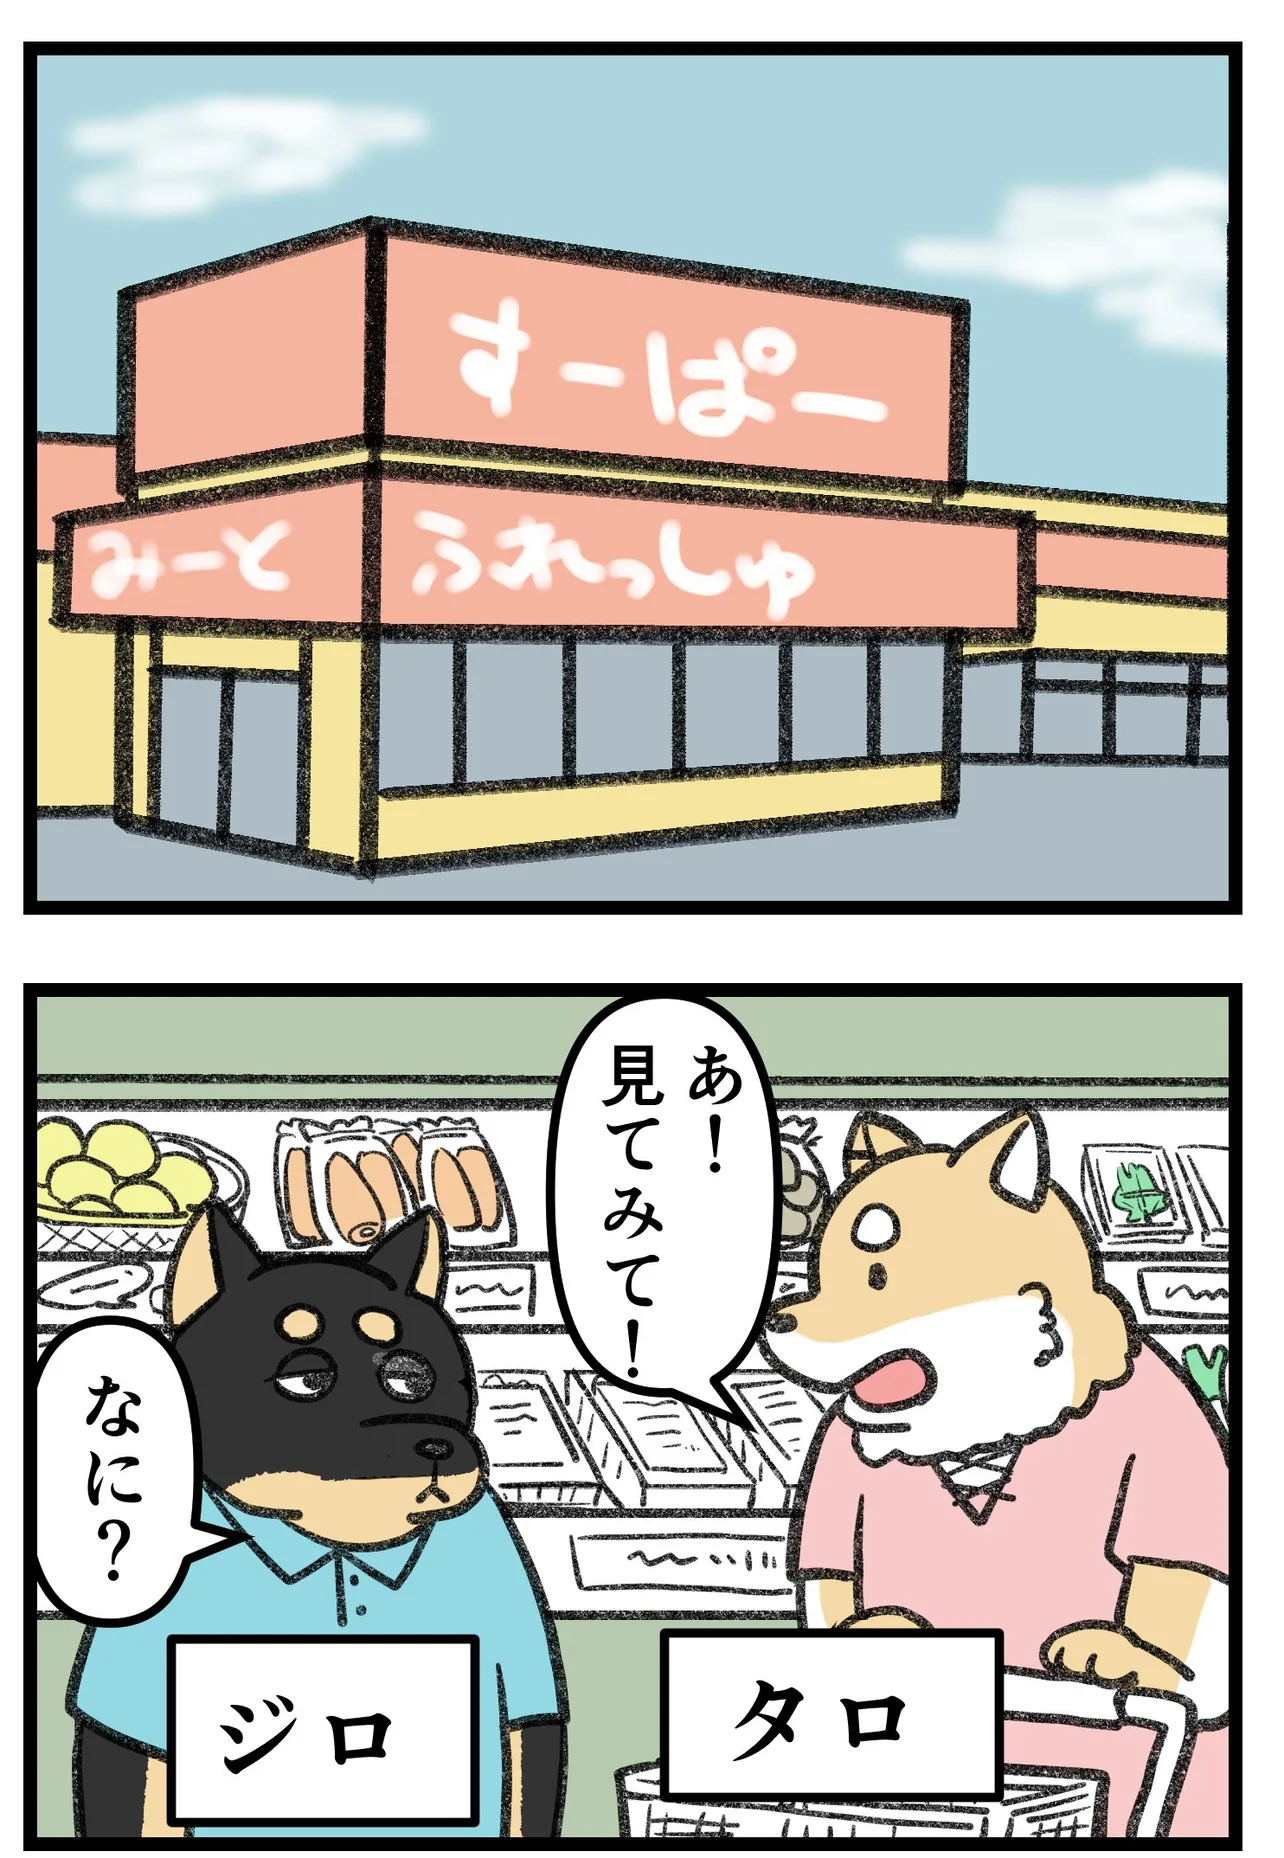 『柴犬二匹が山菜の天ぷらを作って食べる話』(1/16)